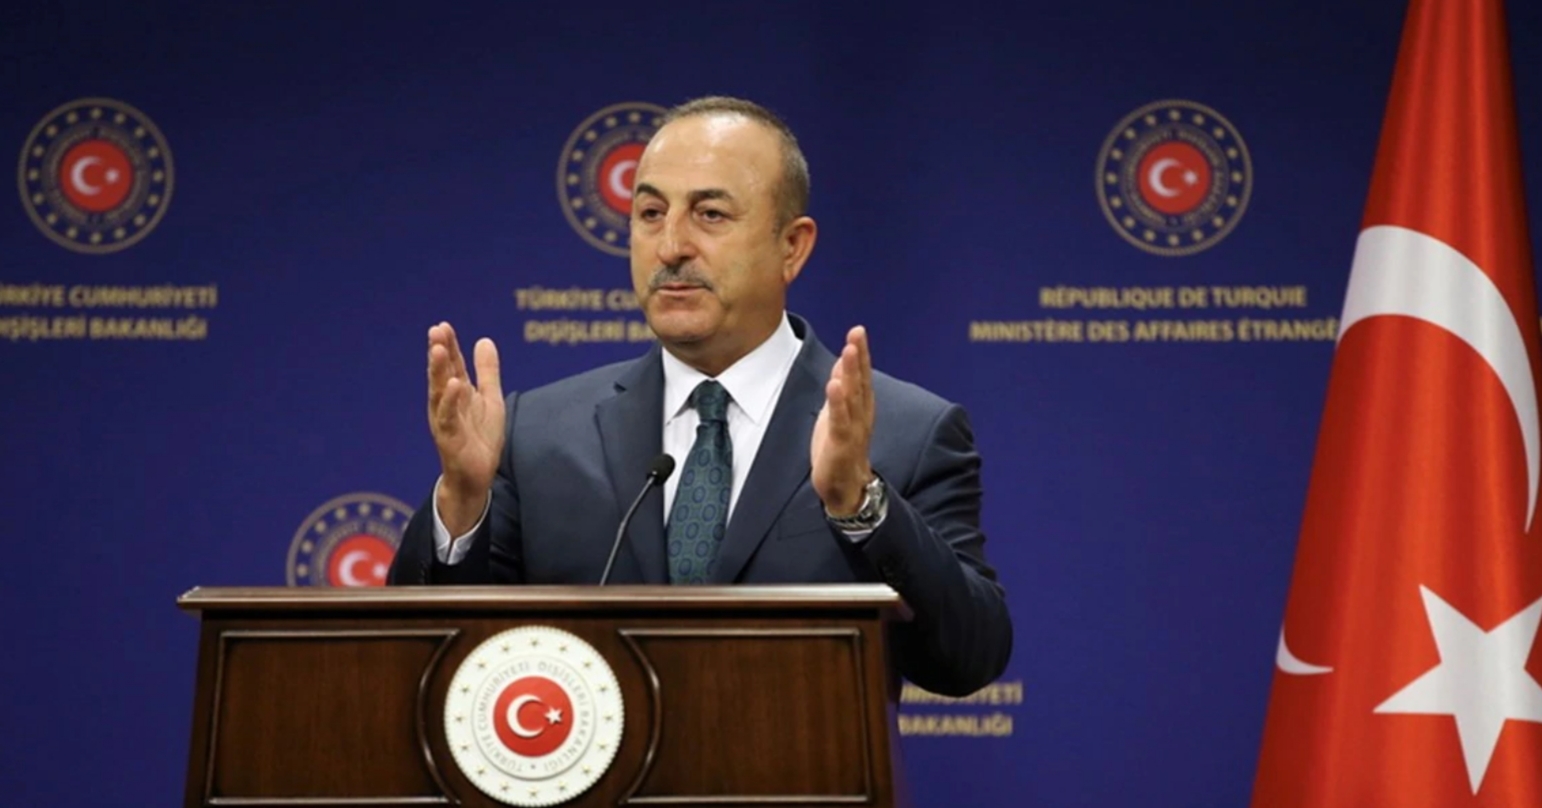 Στη γήπεδο της διπλωματίας μπαίνει και η Τουρκία - Όσα κρύβονται πίσω από τις δηλώσεις Τσαβούσογλου